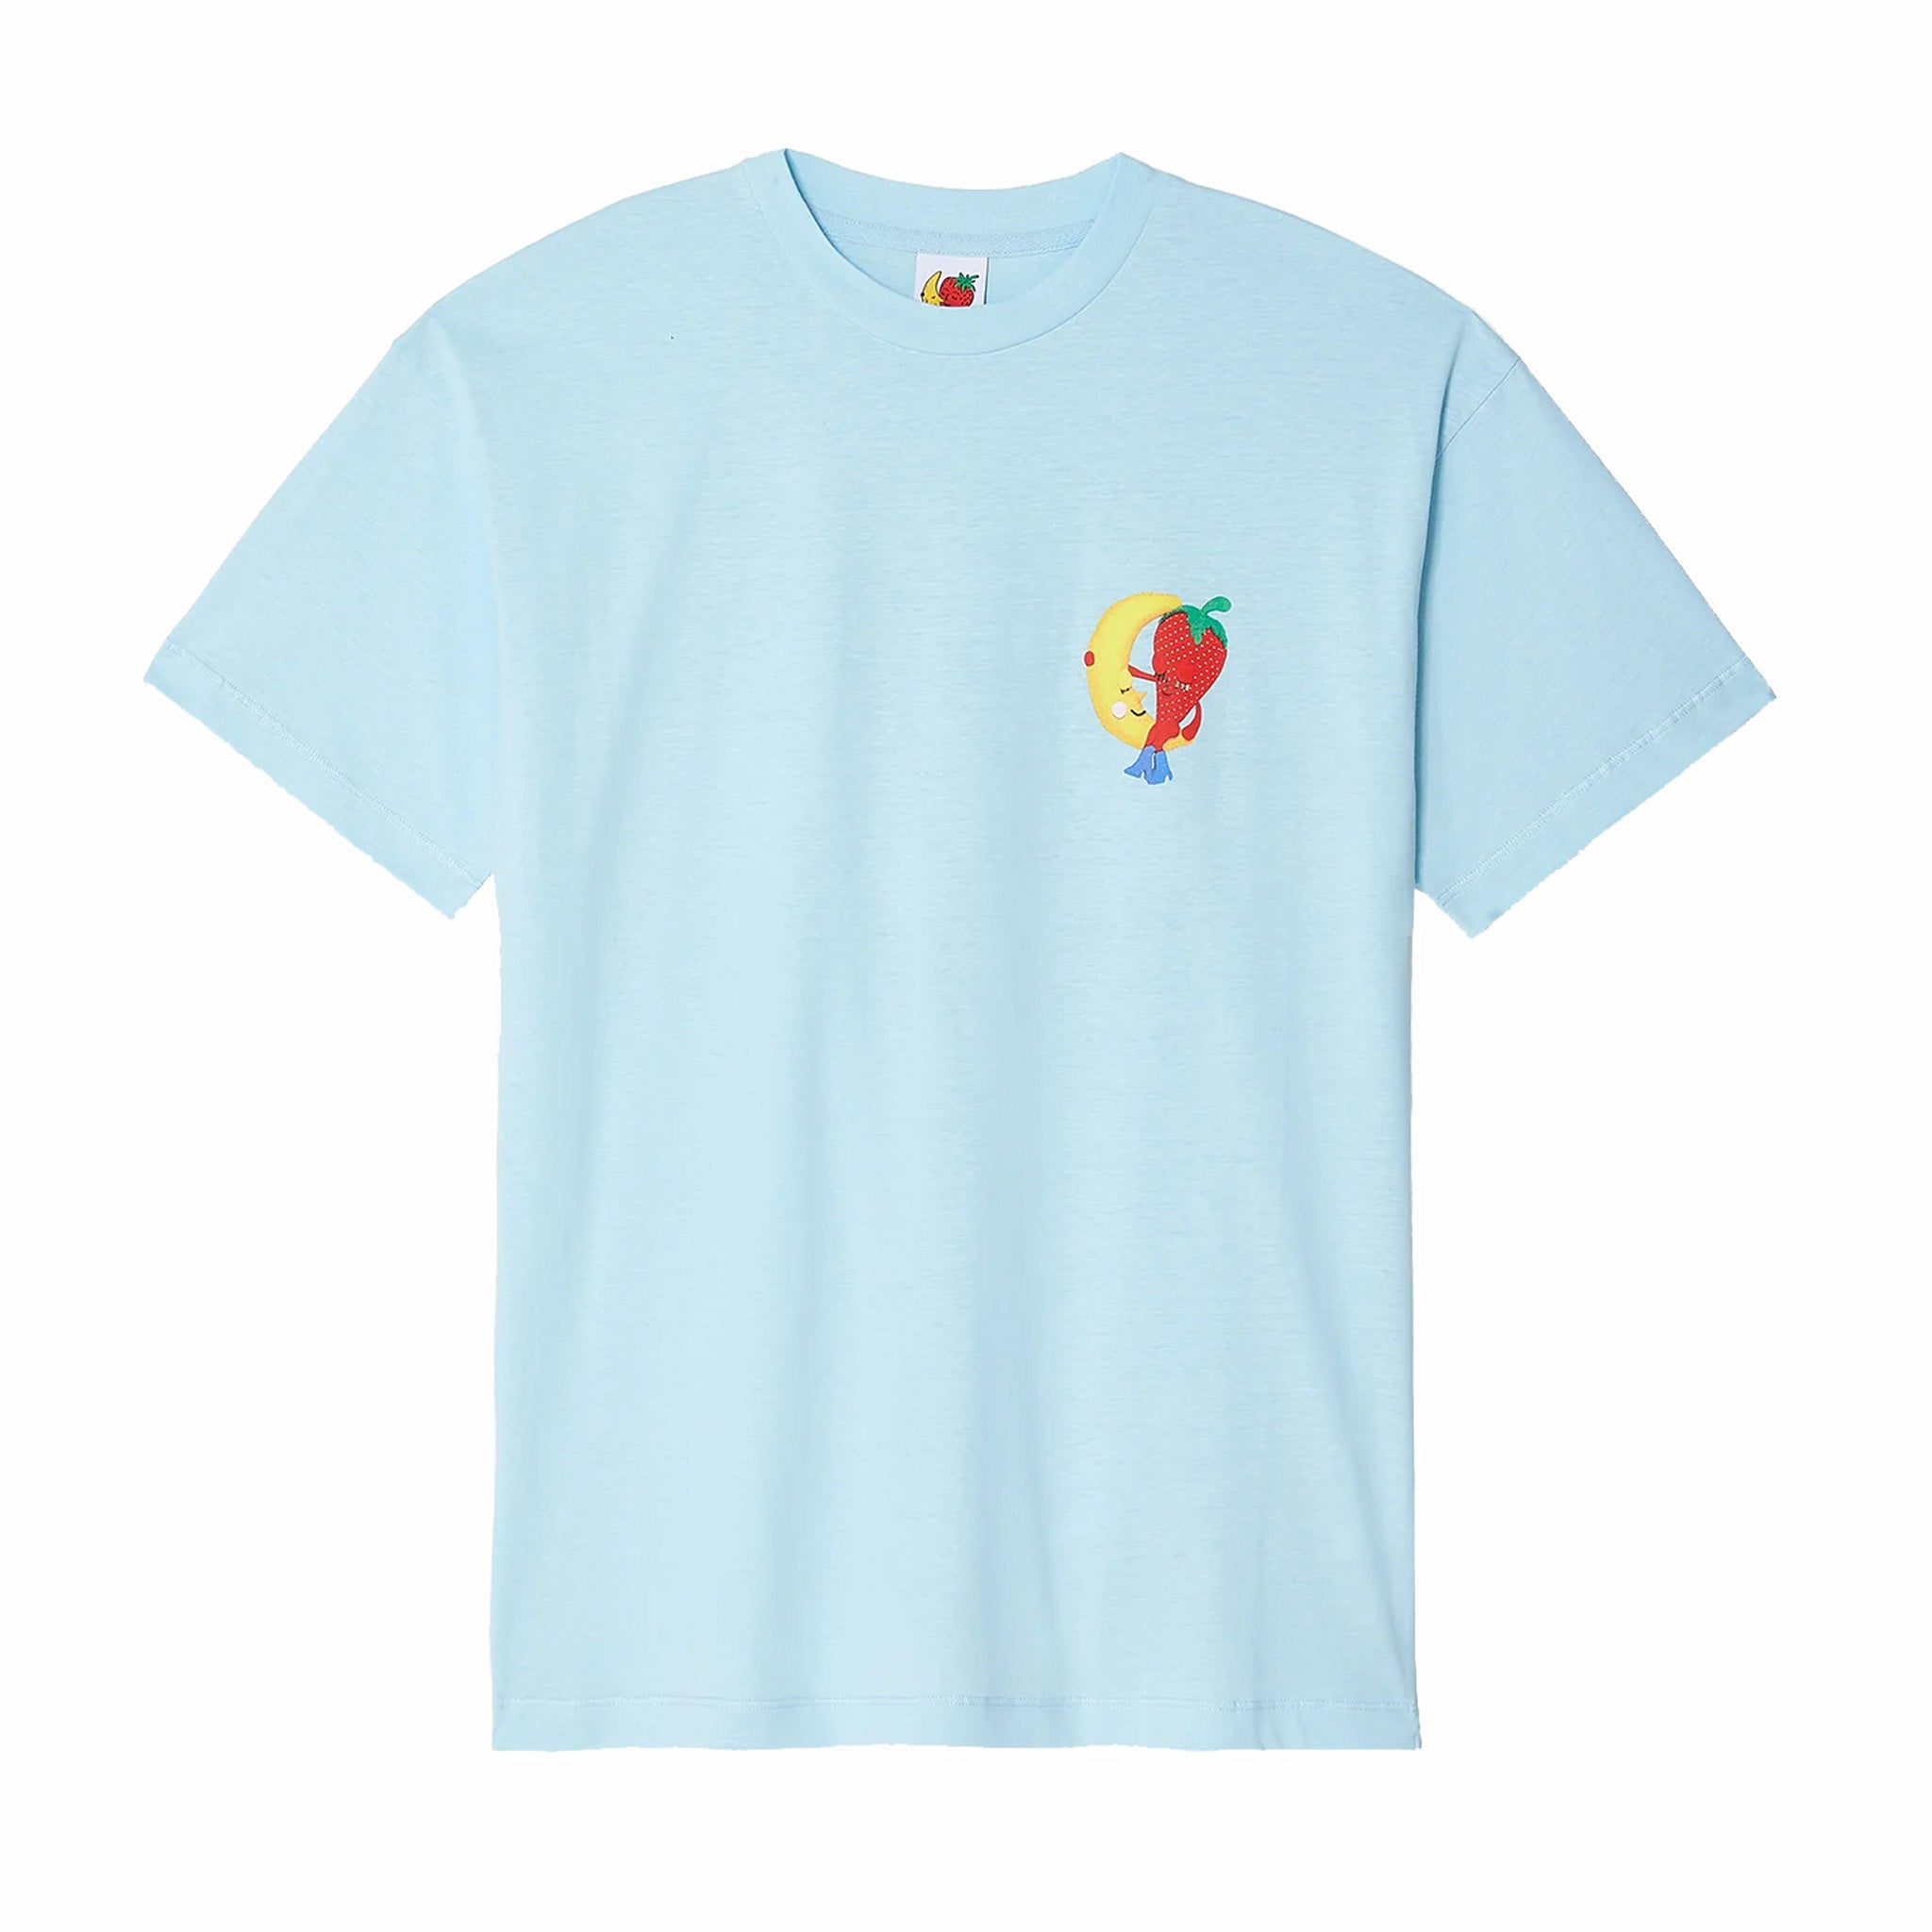 Sky High Farm Workwear Perennial Shana Graphic T-Shirt (Blue) - August Shop